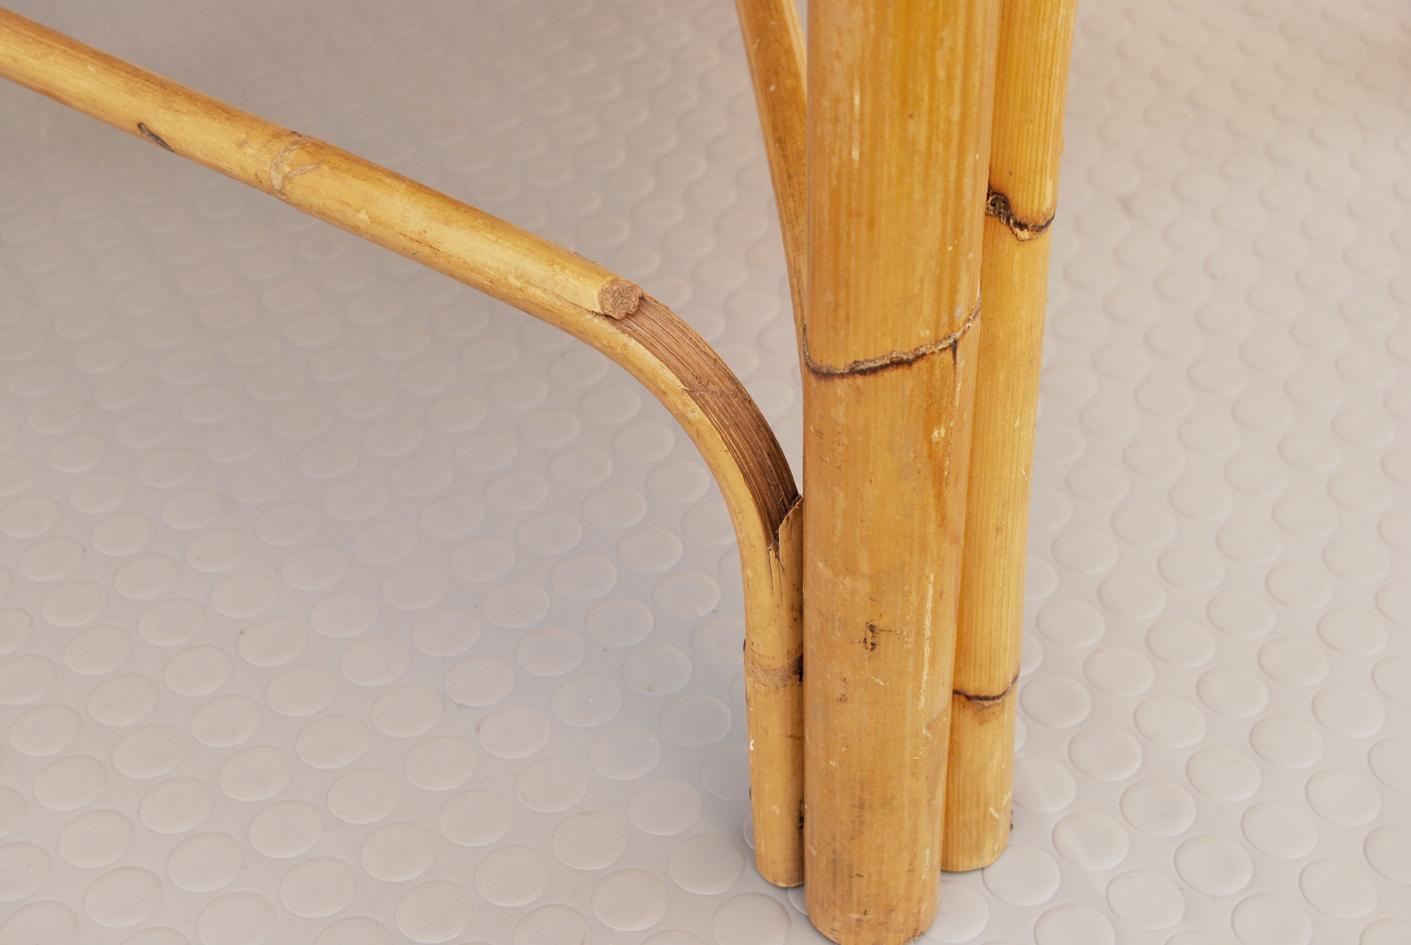 Fauteuil vintage de style Bonacina en bambou et faux cuir datant de 1960. 
Un bel objet construit à partir de cannes de bambou courbées et reliées par de l'osier. Le siège d'origine était en tissu de coton. Comme il était abîmé, pour lui donner une